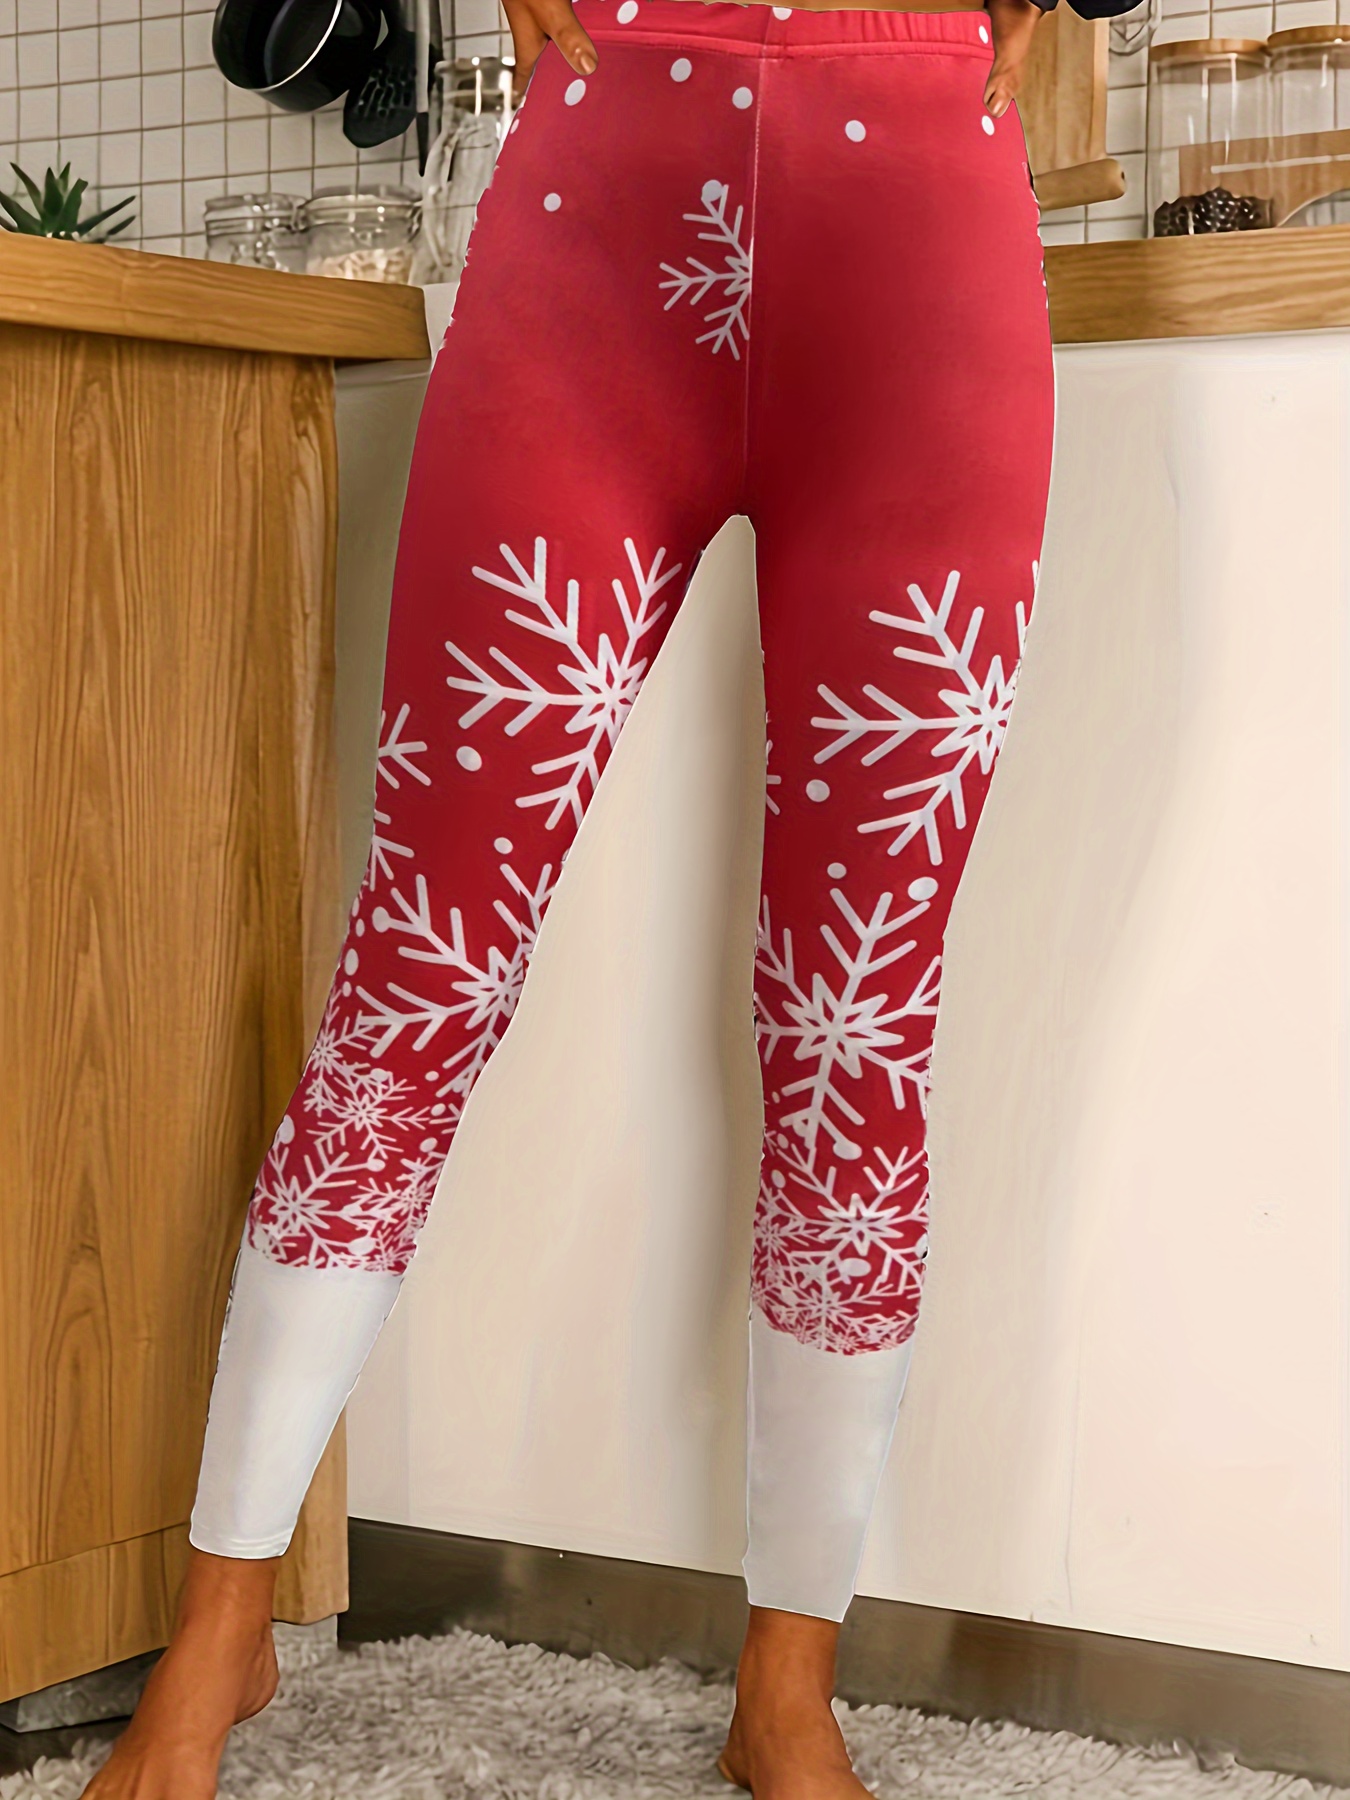 Leggings de algodón para mujer, cálidos, elásticos, para invierno, Navidad,  cintura alta, forrados, leggins navideños, leggins de invierno, divertidos